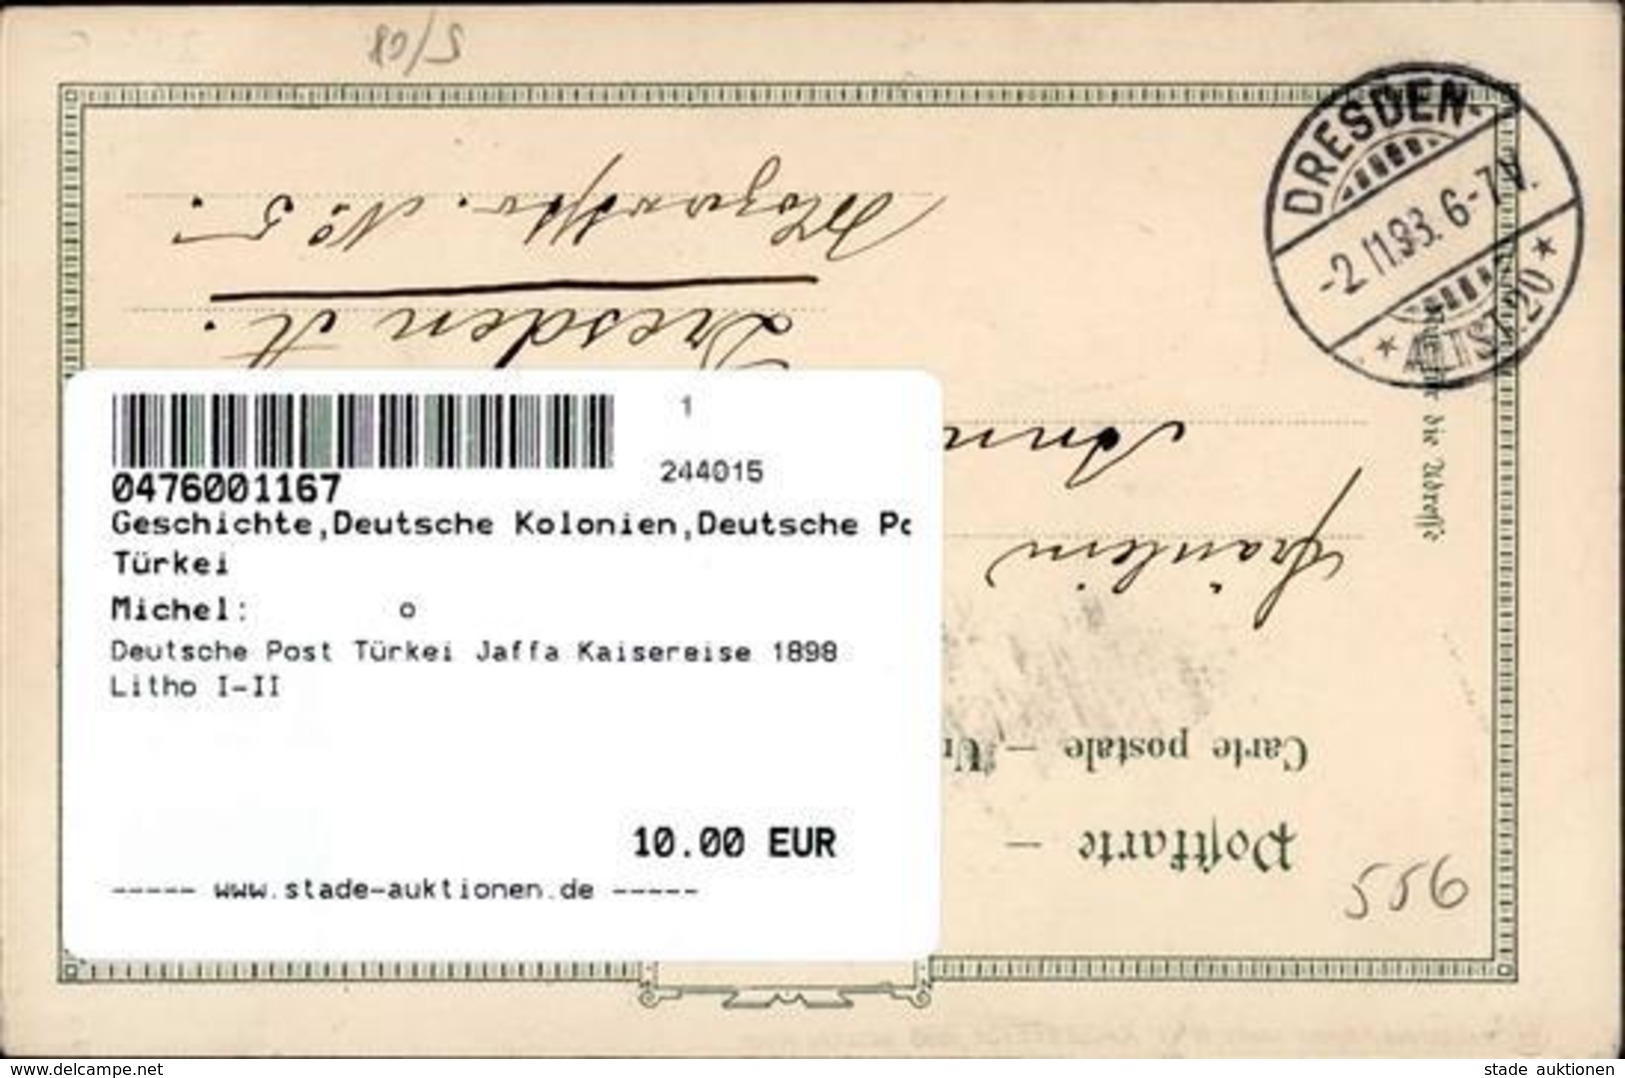 Deutsche Post Türkei Jaffa Kaisereise 1898 Litho I-II - History